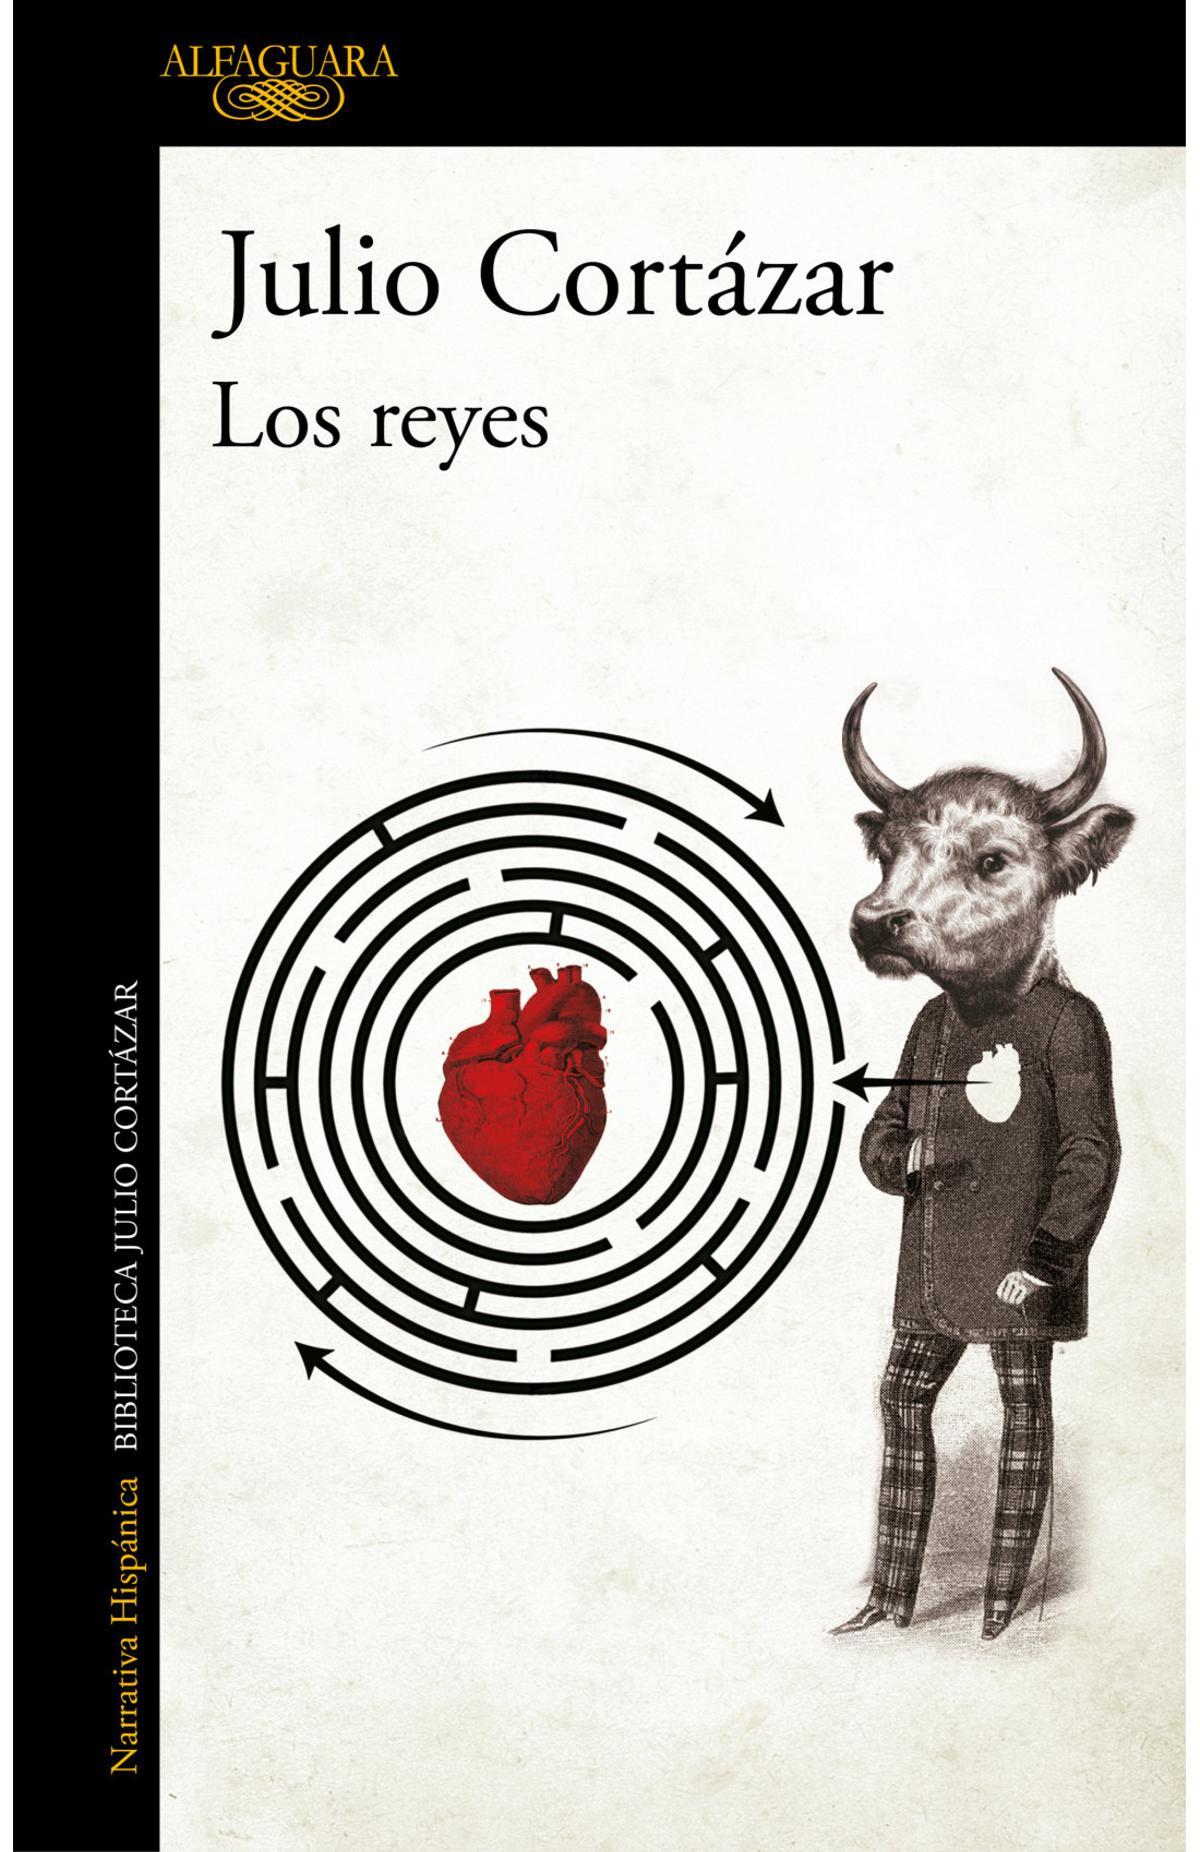 Portada de 'Los reyes', de Julio Cortázar.